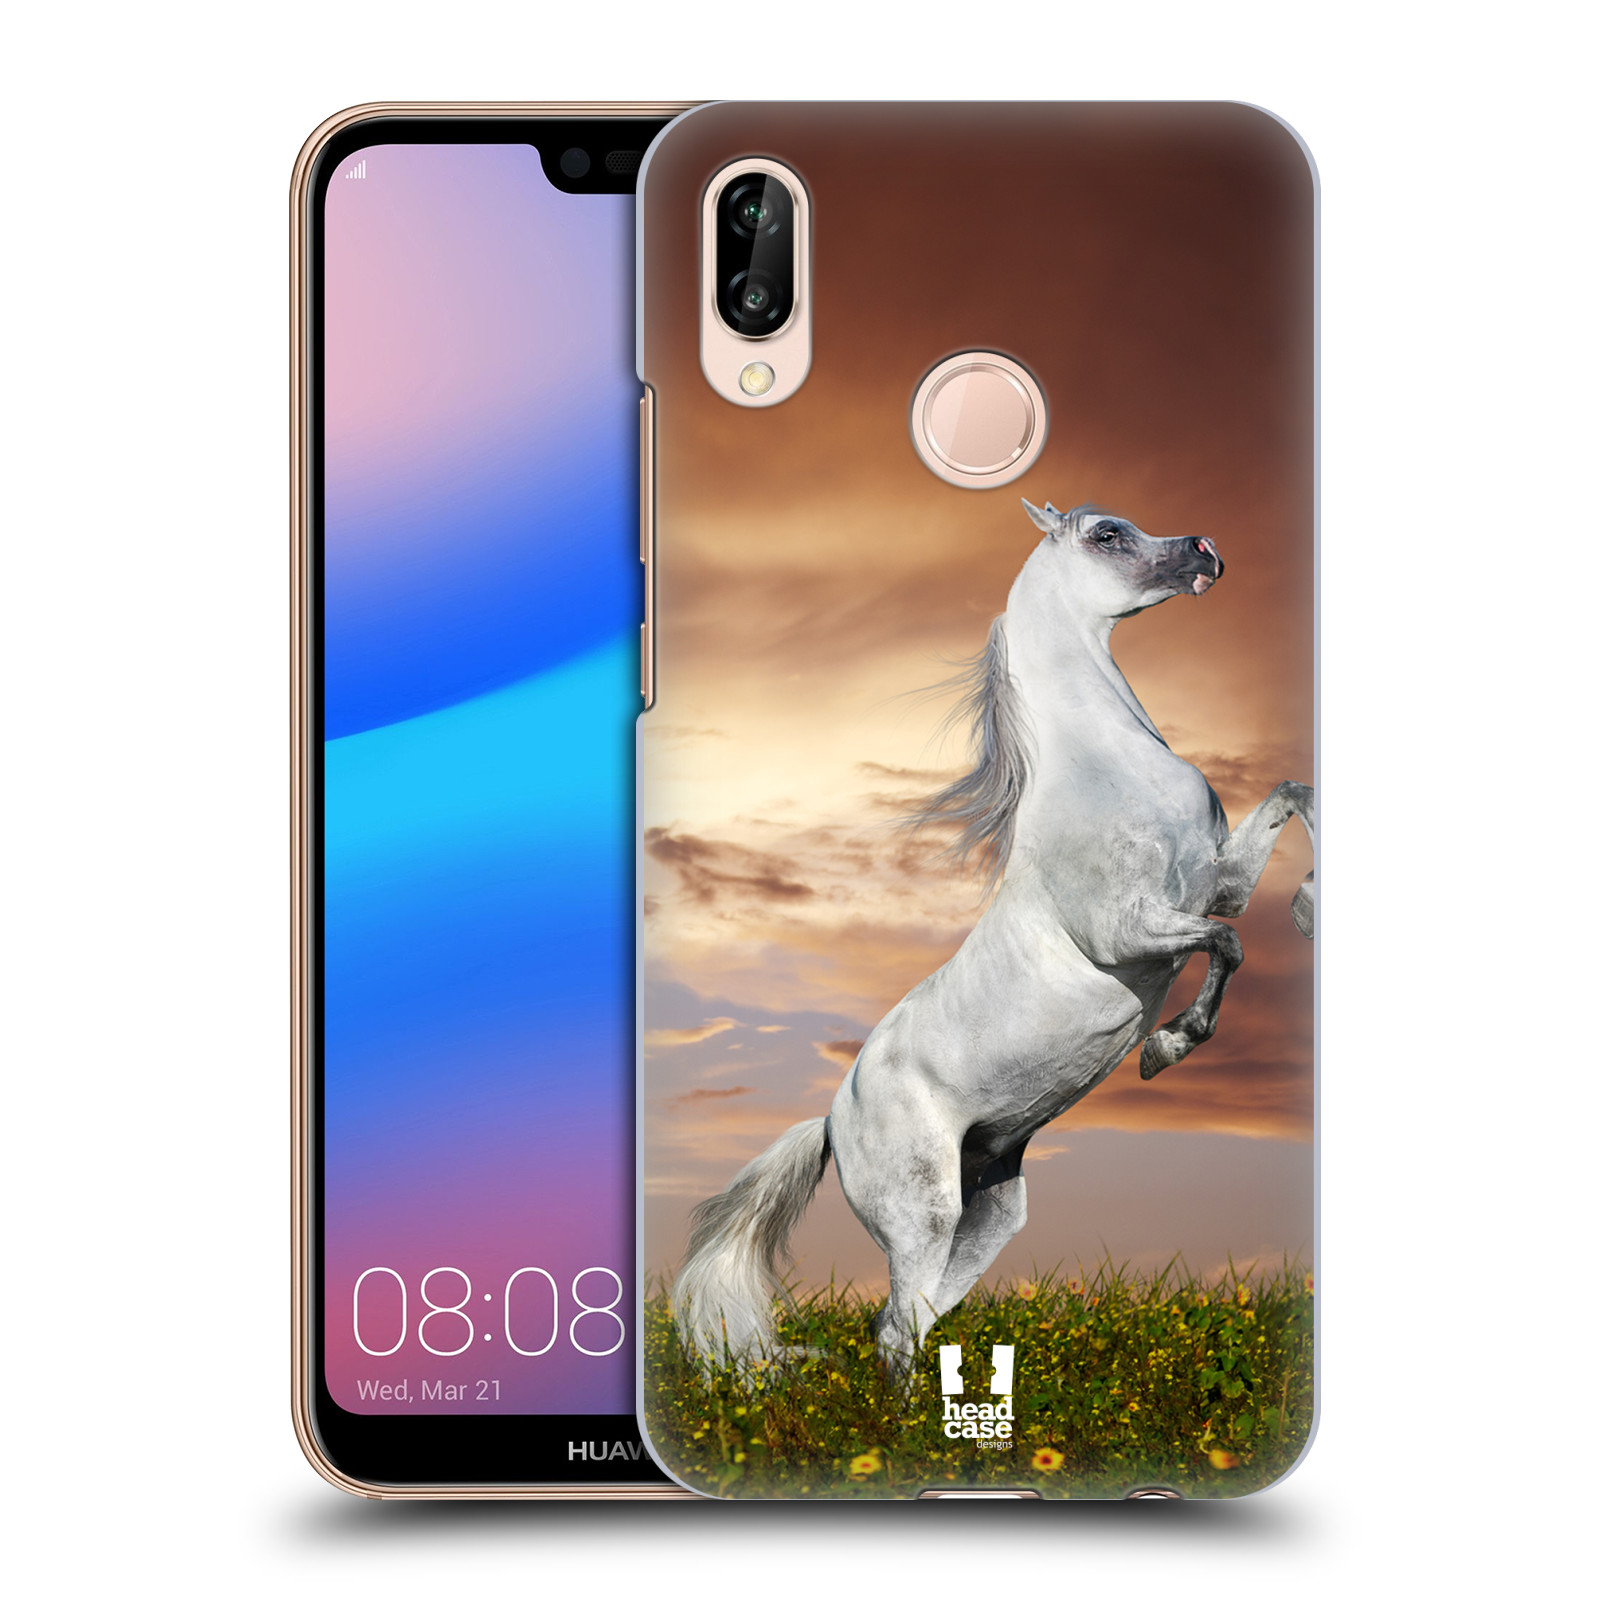 Zadní obal pro mobil Huawei P20 LITE - HEAD CASE - Svět zvířat divoký kůň